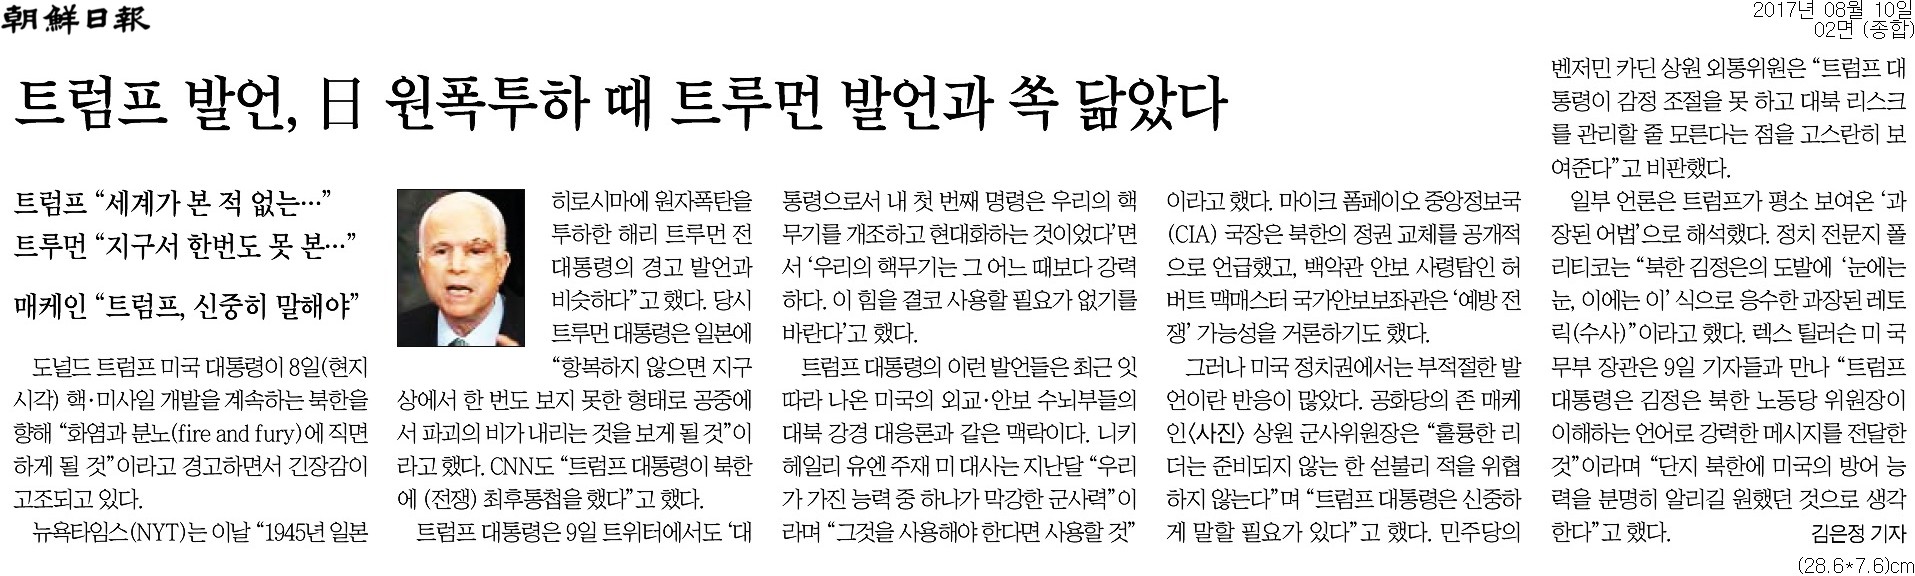 ▲ 조선일보 2면 기사